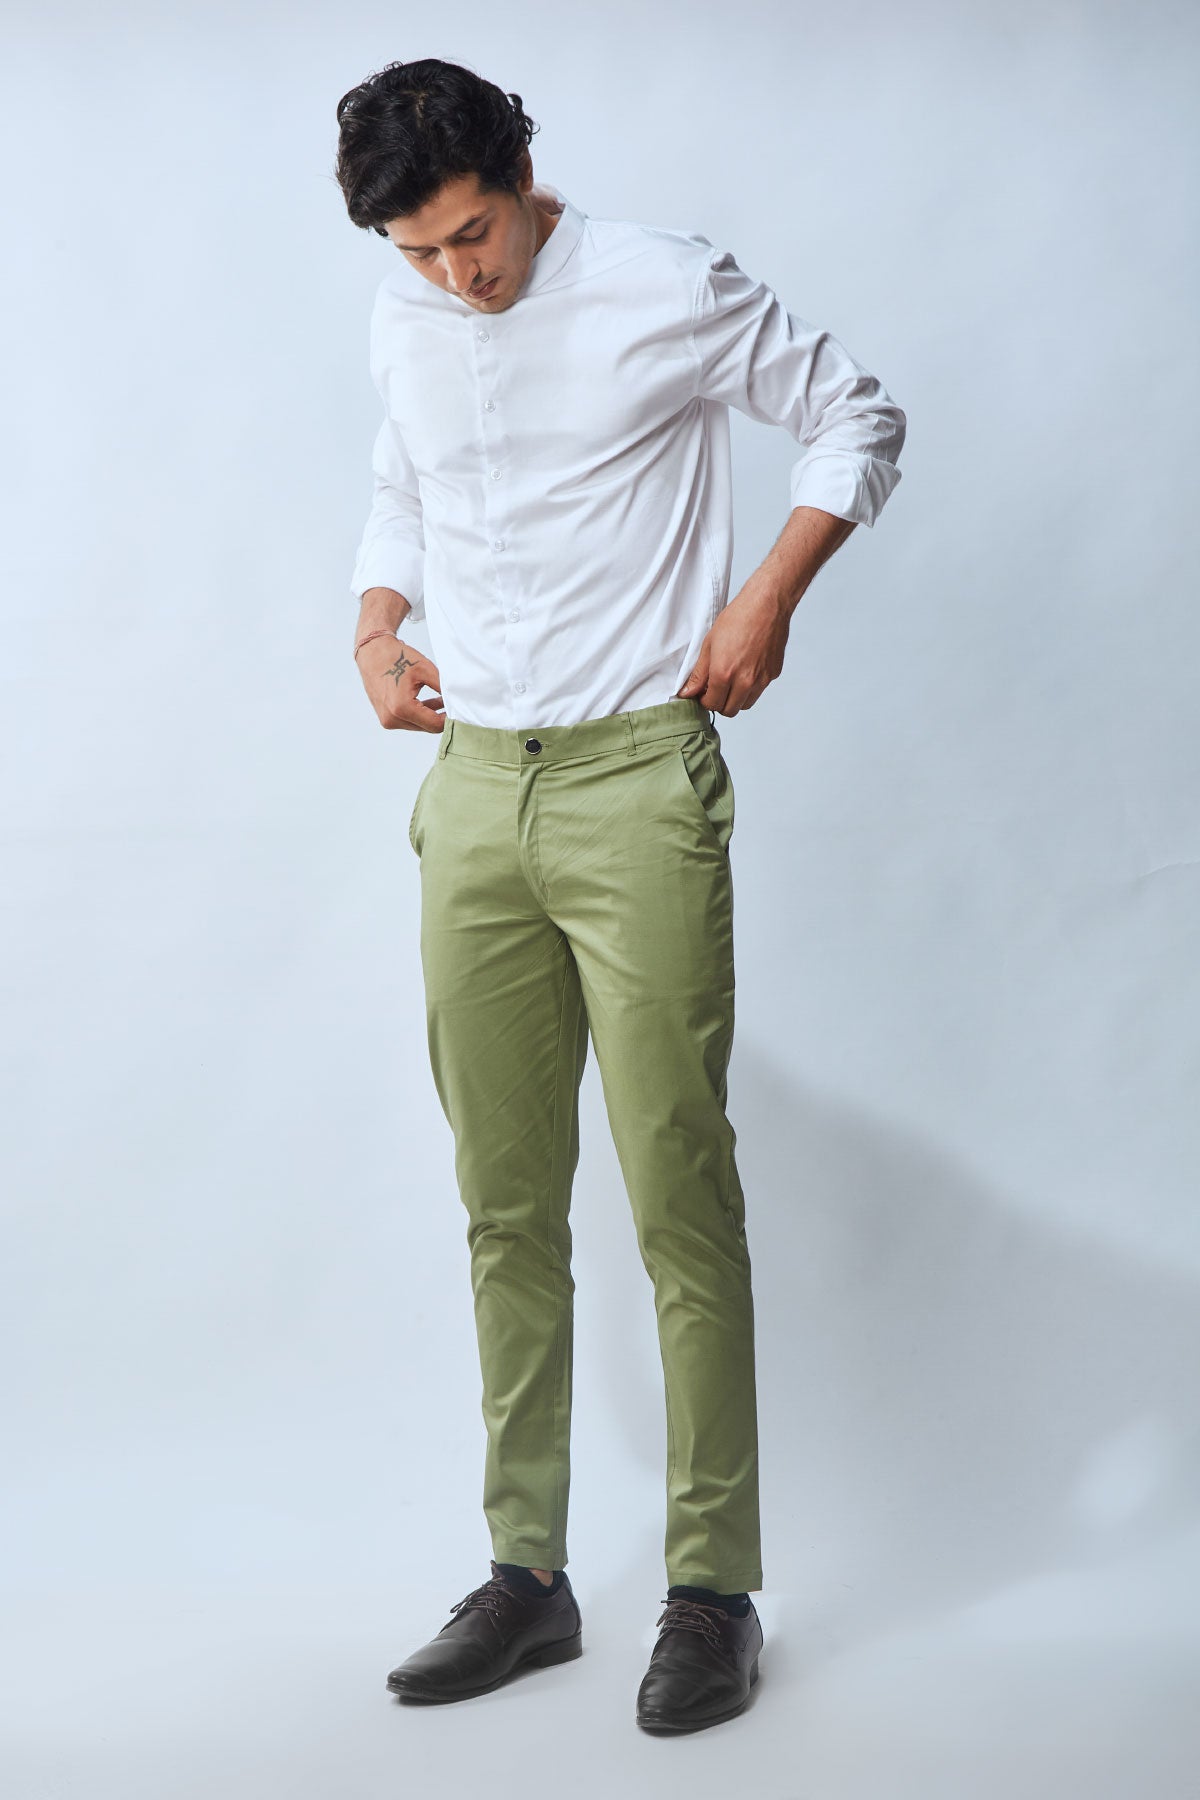 Green Pant Matching Shirt Ideas Men | Green shirt outfits, Shirt outfit  men, Dapper outfit